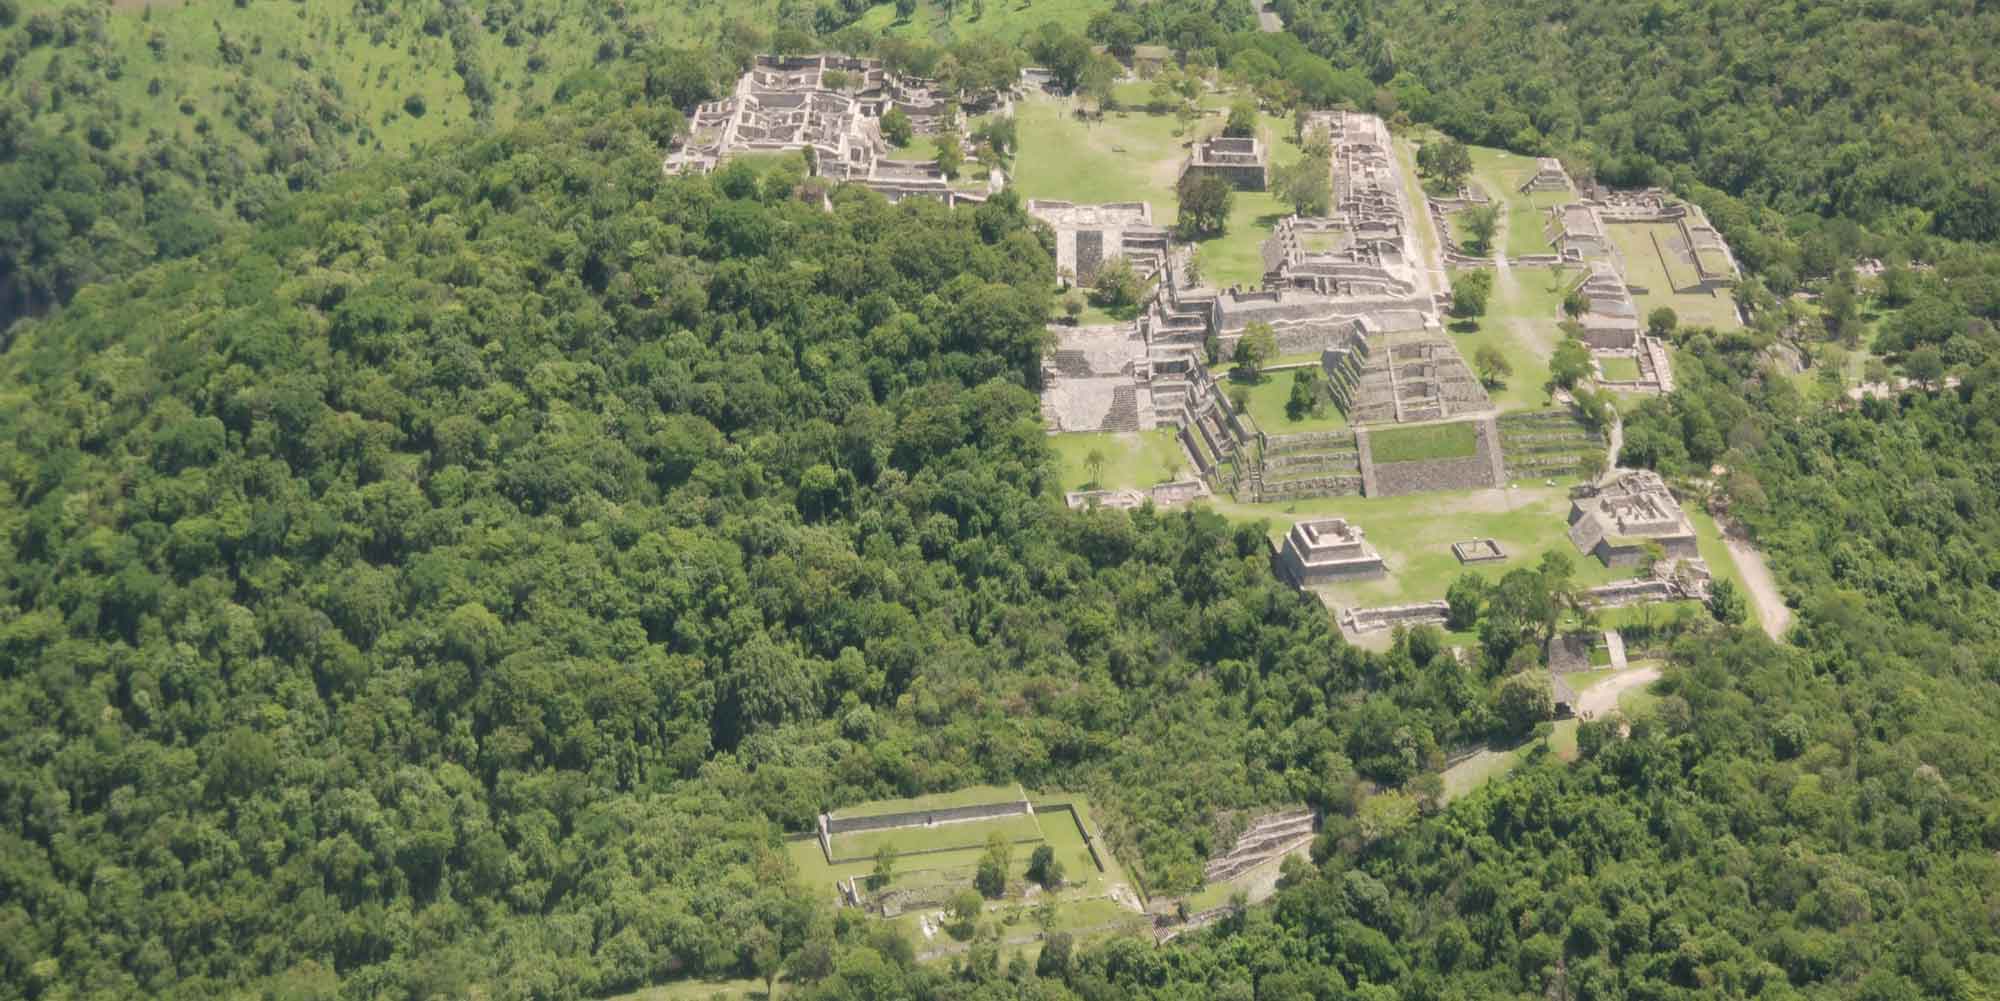 Imagen aérea de la zona arqueológica de Xochicalco, rodeada de vegetación.